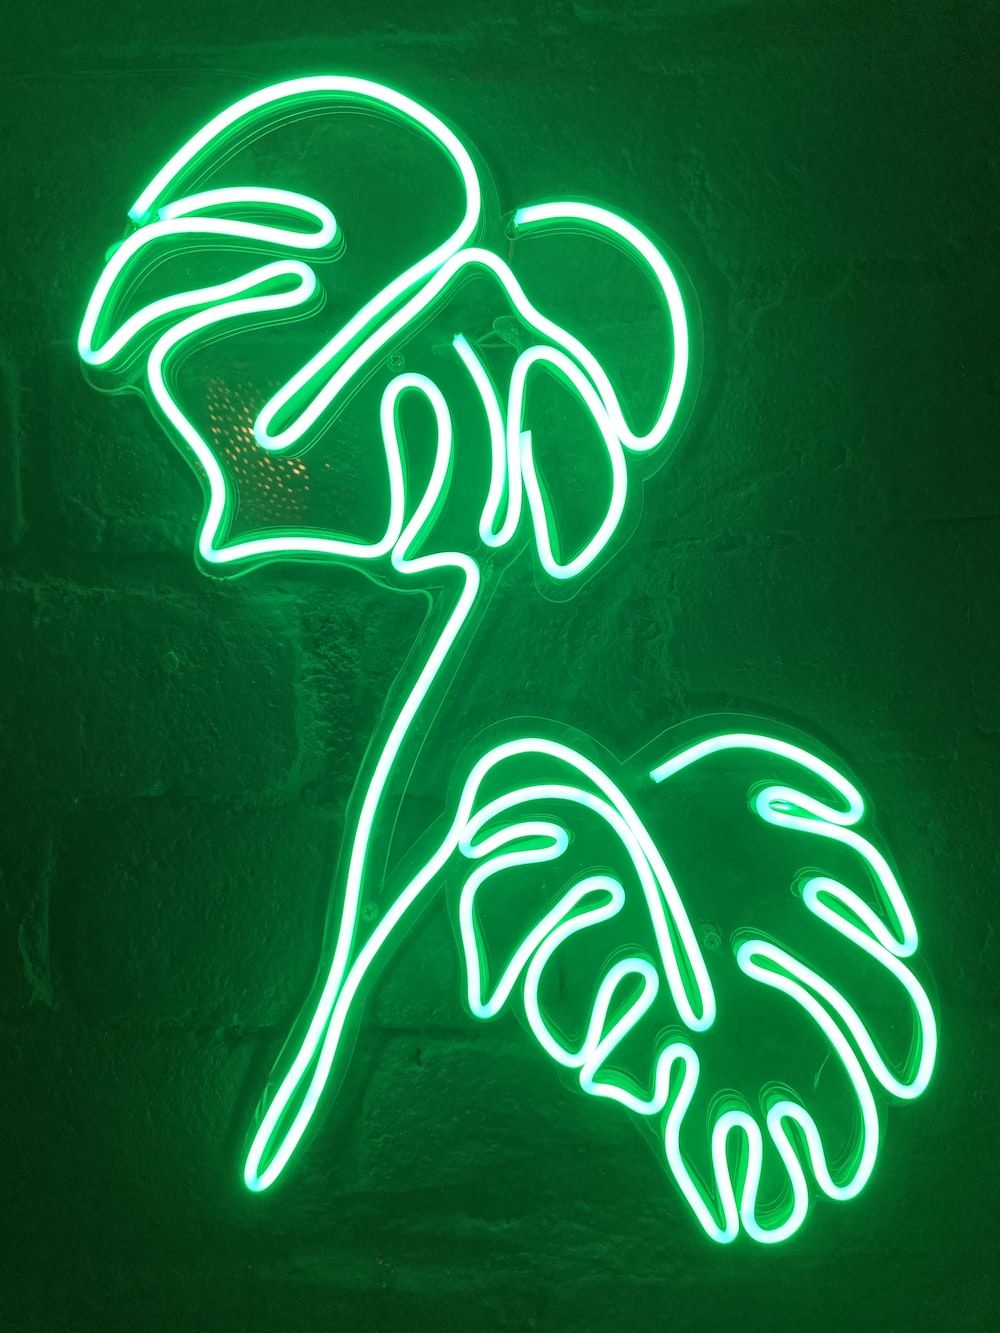  Grüner Hintergrundbild 1000x1333. Foto zum Thema Weiße und grüne Neonlichtbeschilderung